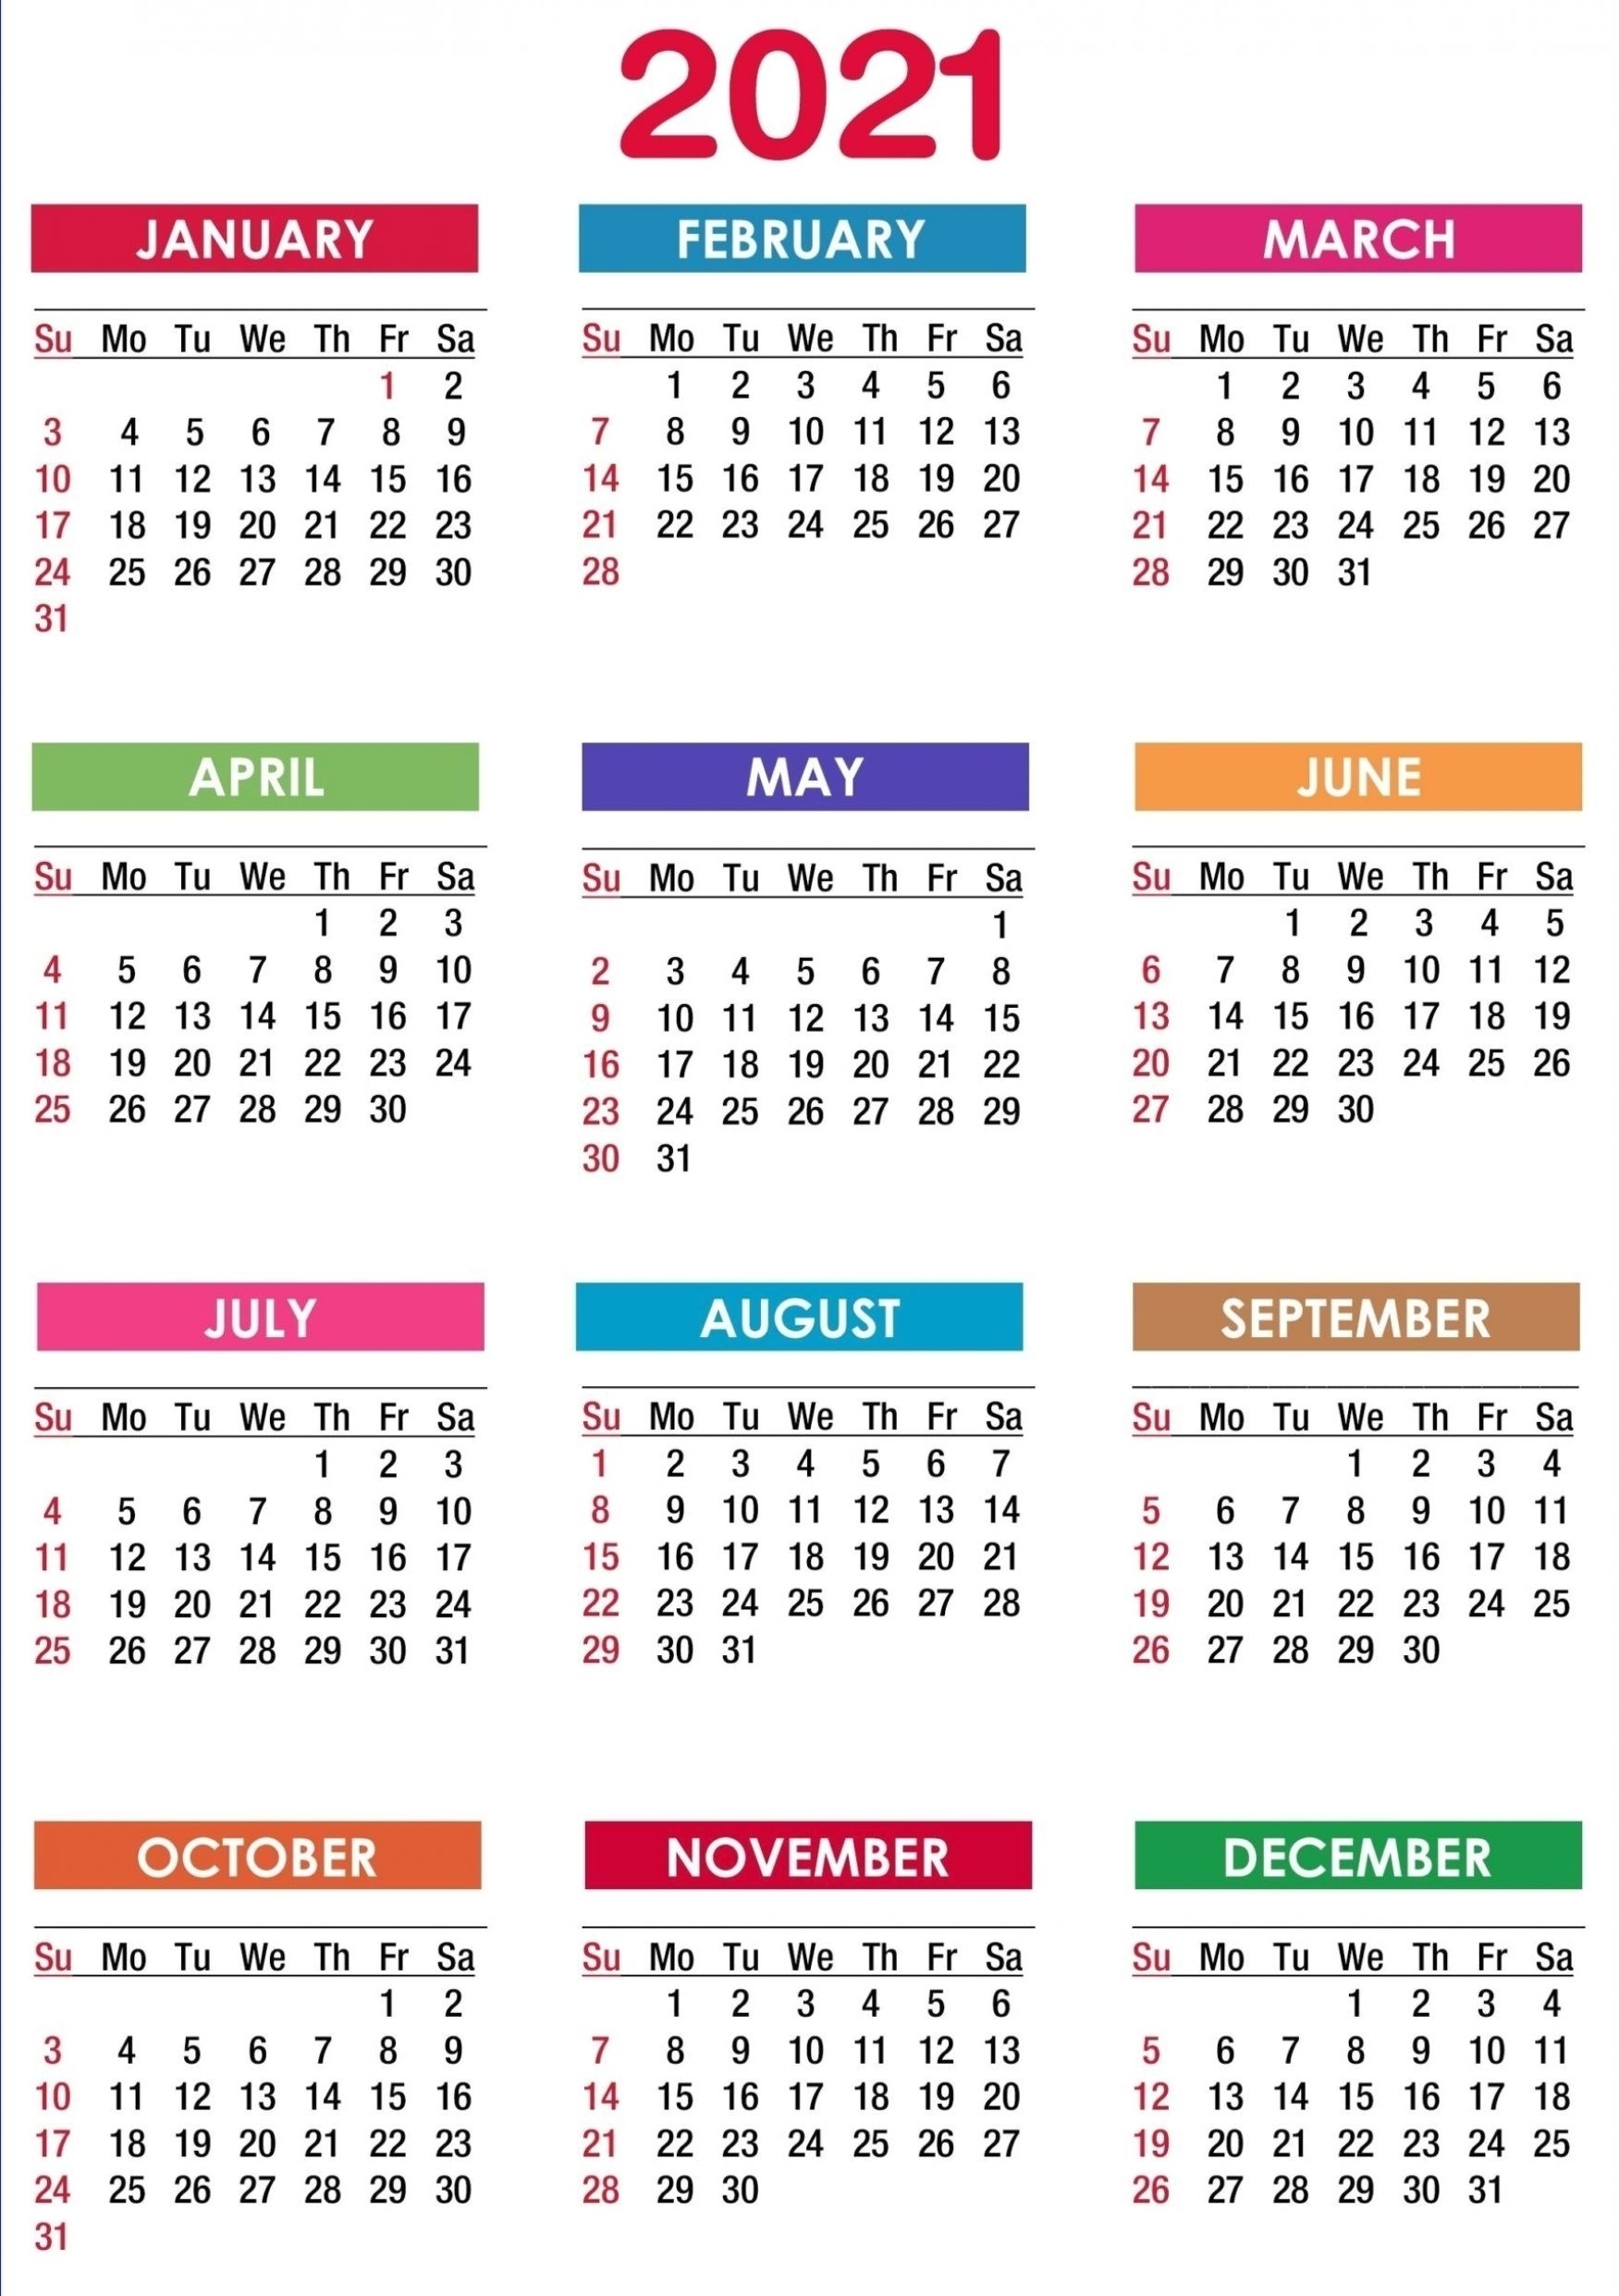 Catch Calendar For All 12 Months